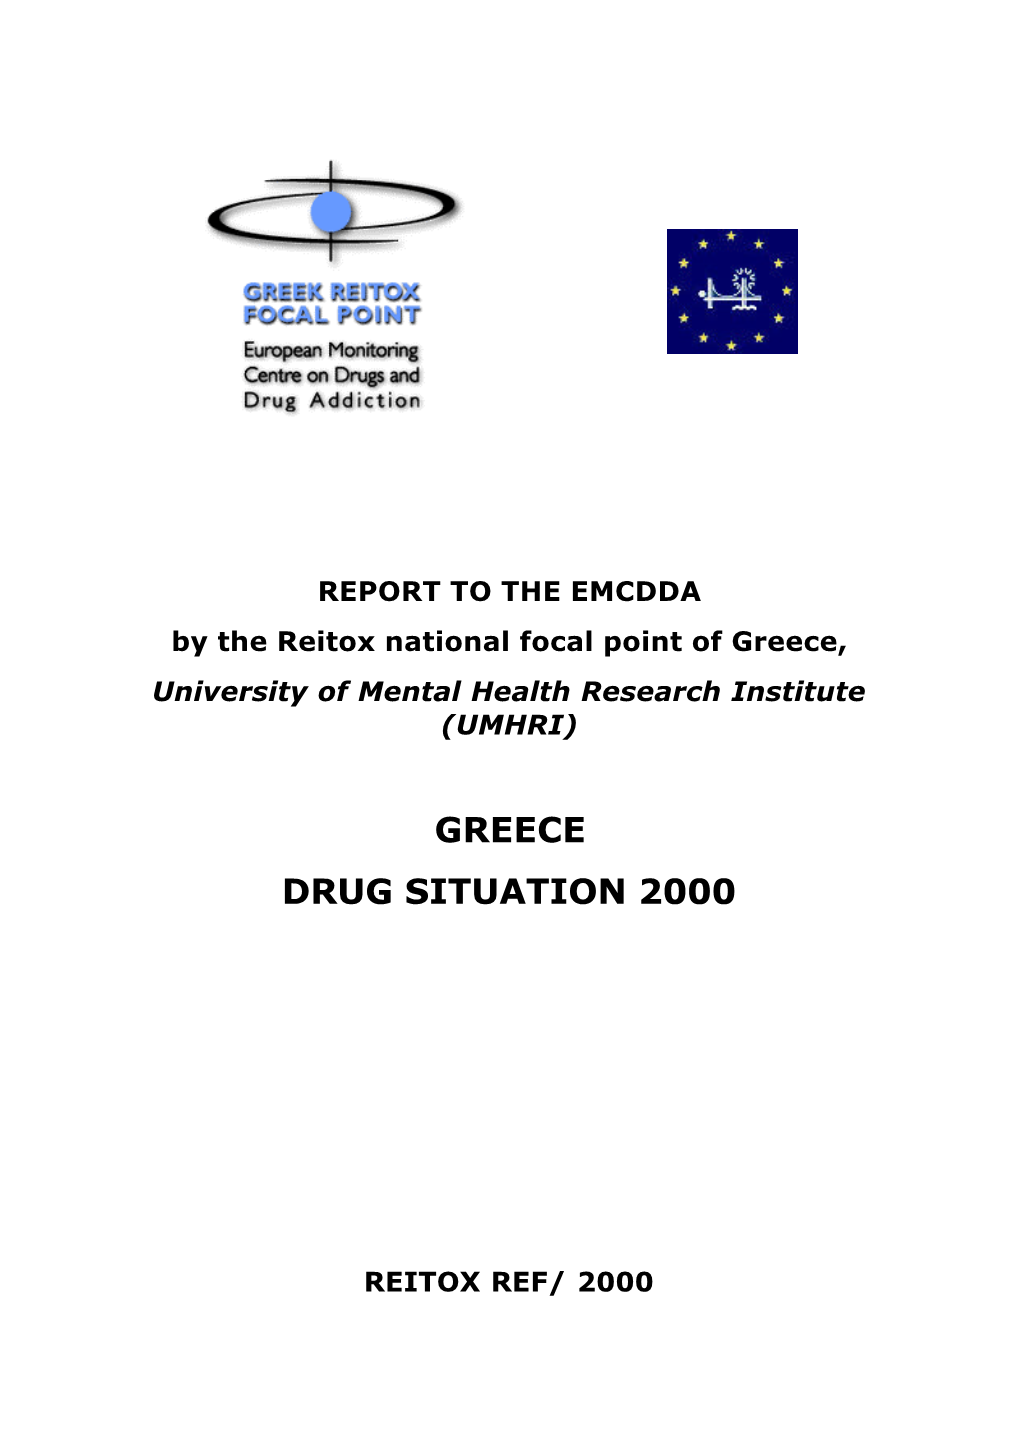 Greece Drug Situation 2000